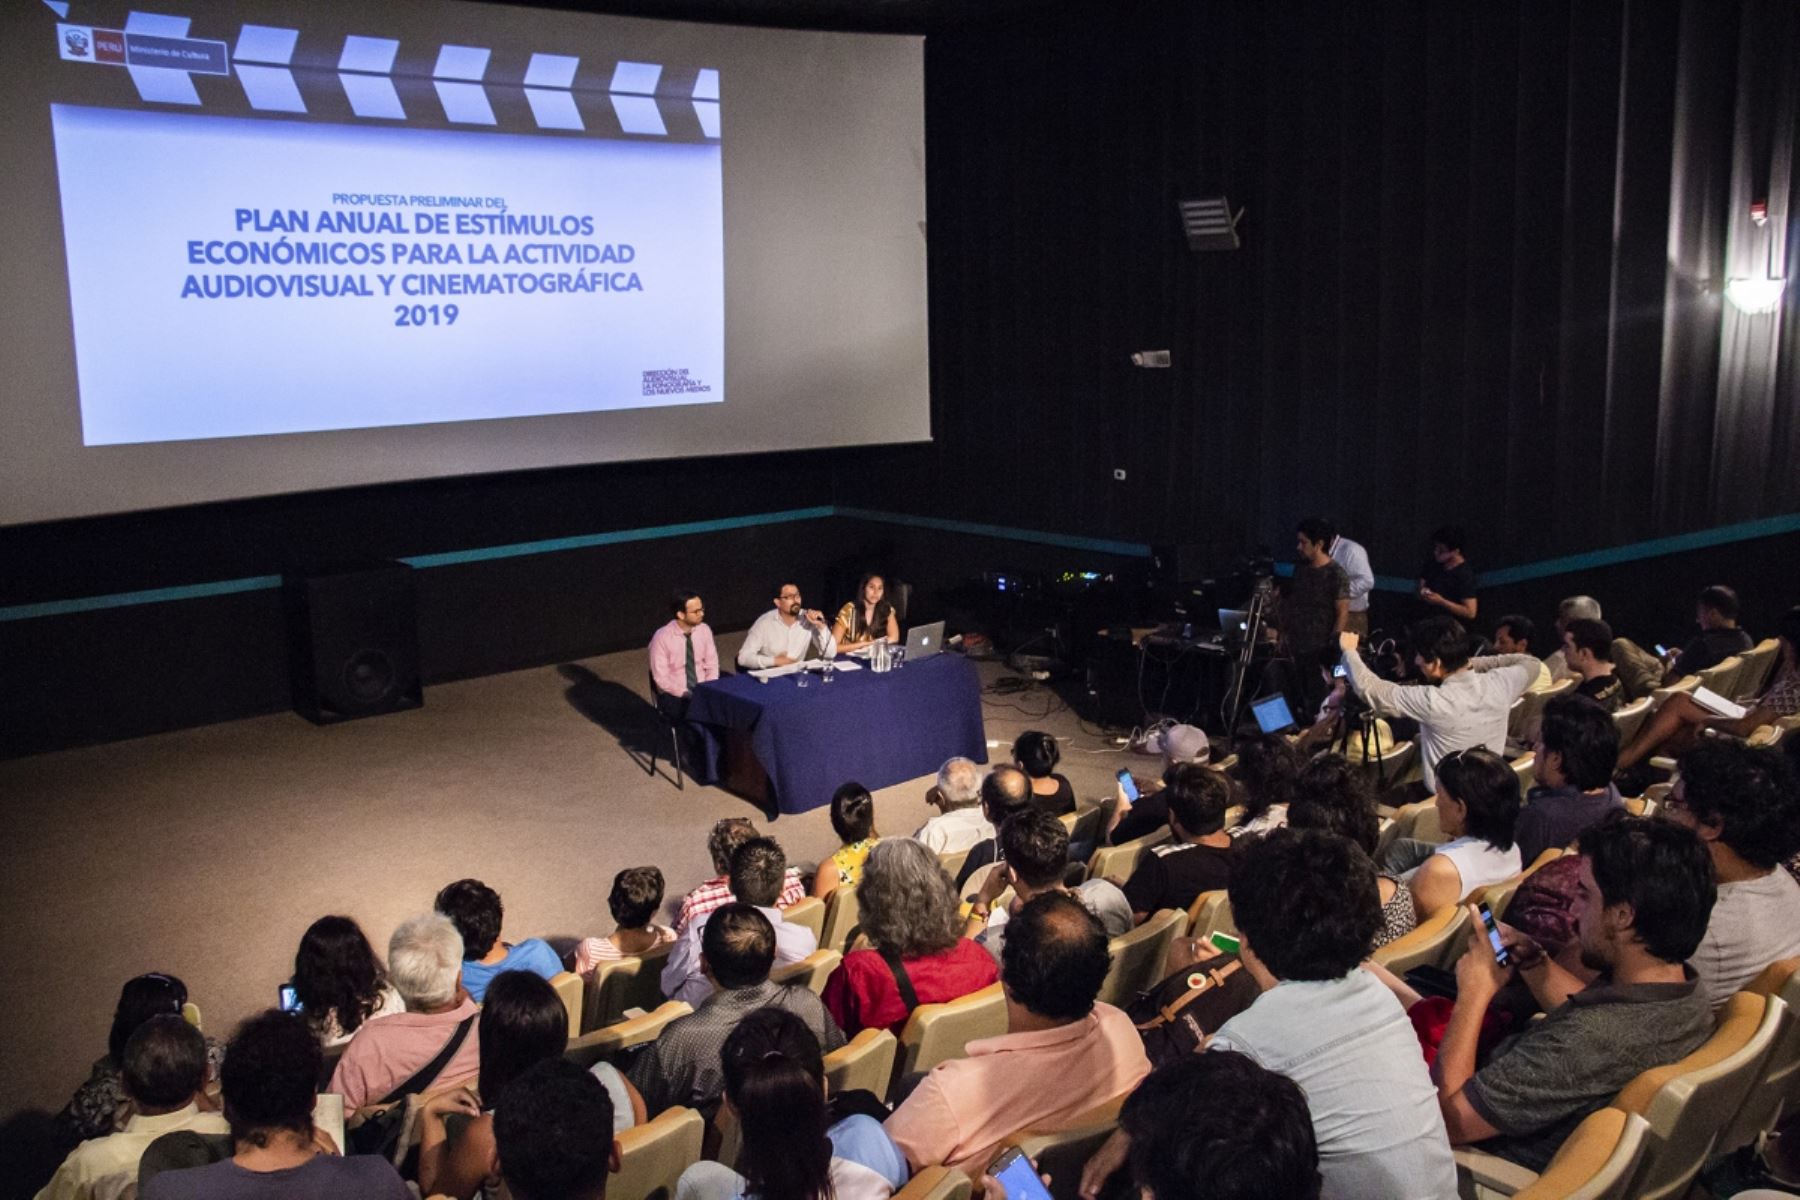 Ministerio de Cultura informará sobre estímulos para la actividad audiovisual y cinematográfica en Tacna y Moquegua. ANDINA/Difusión